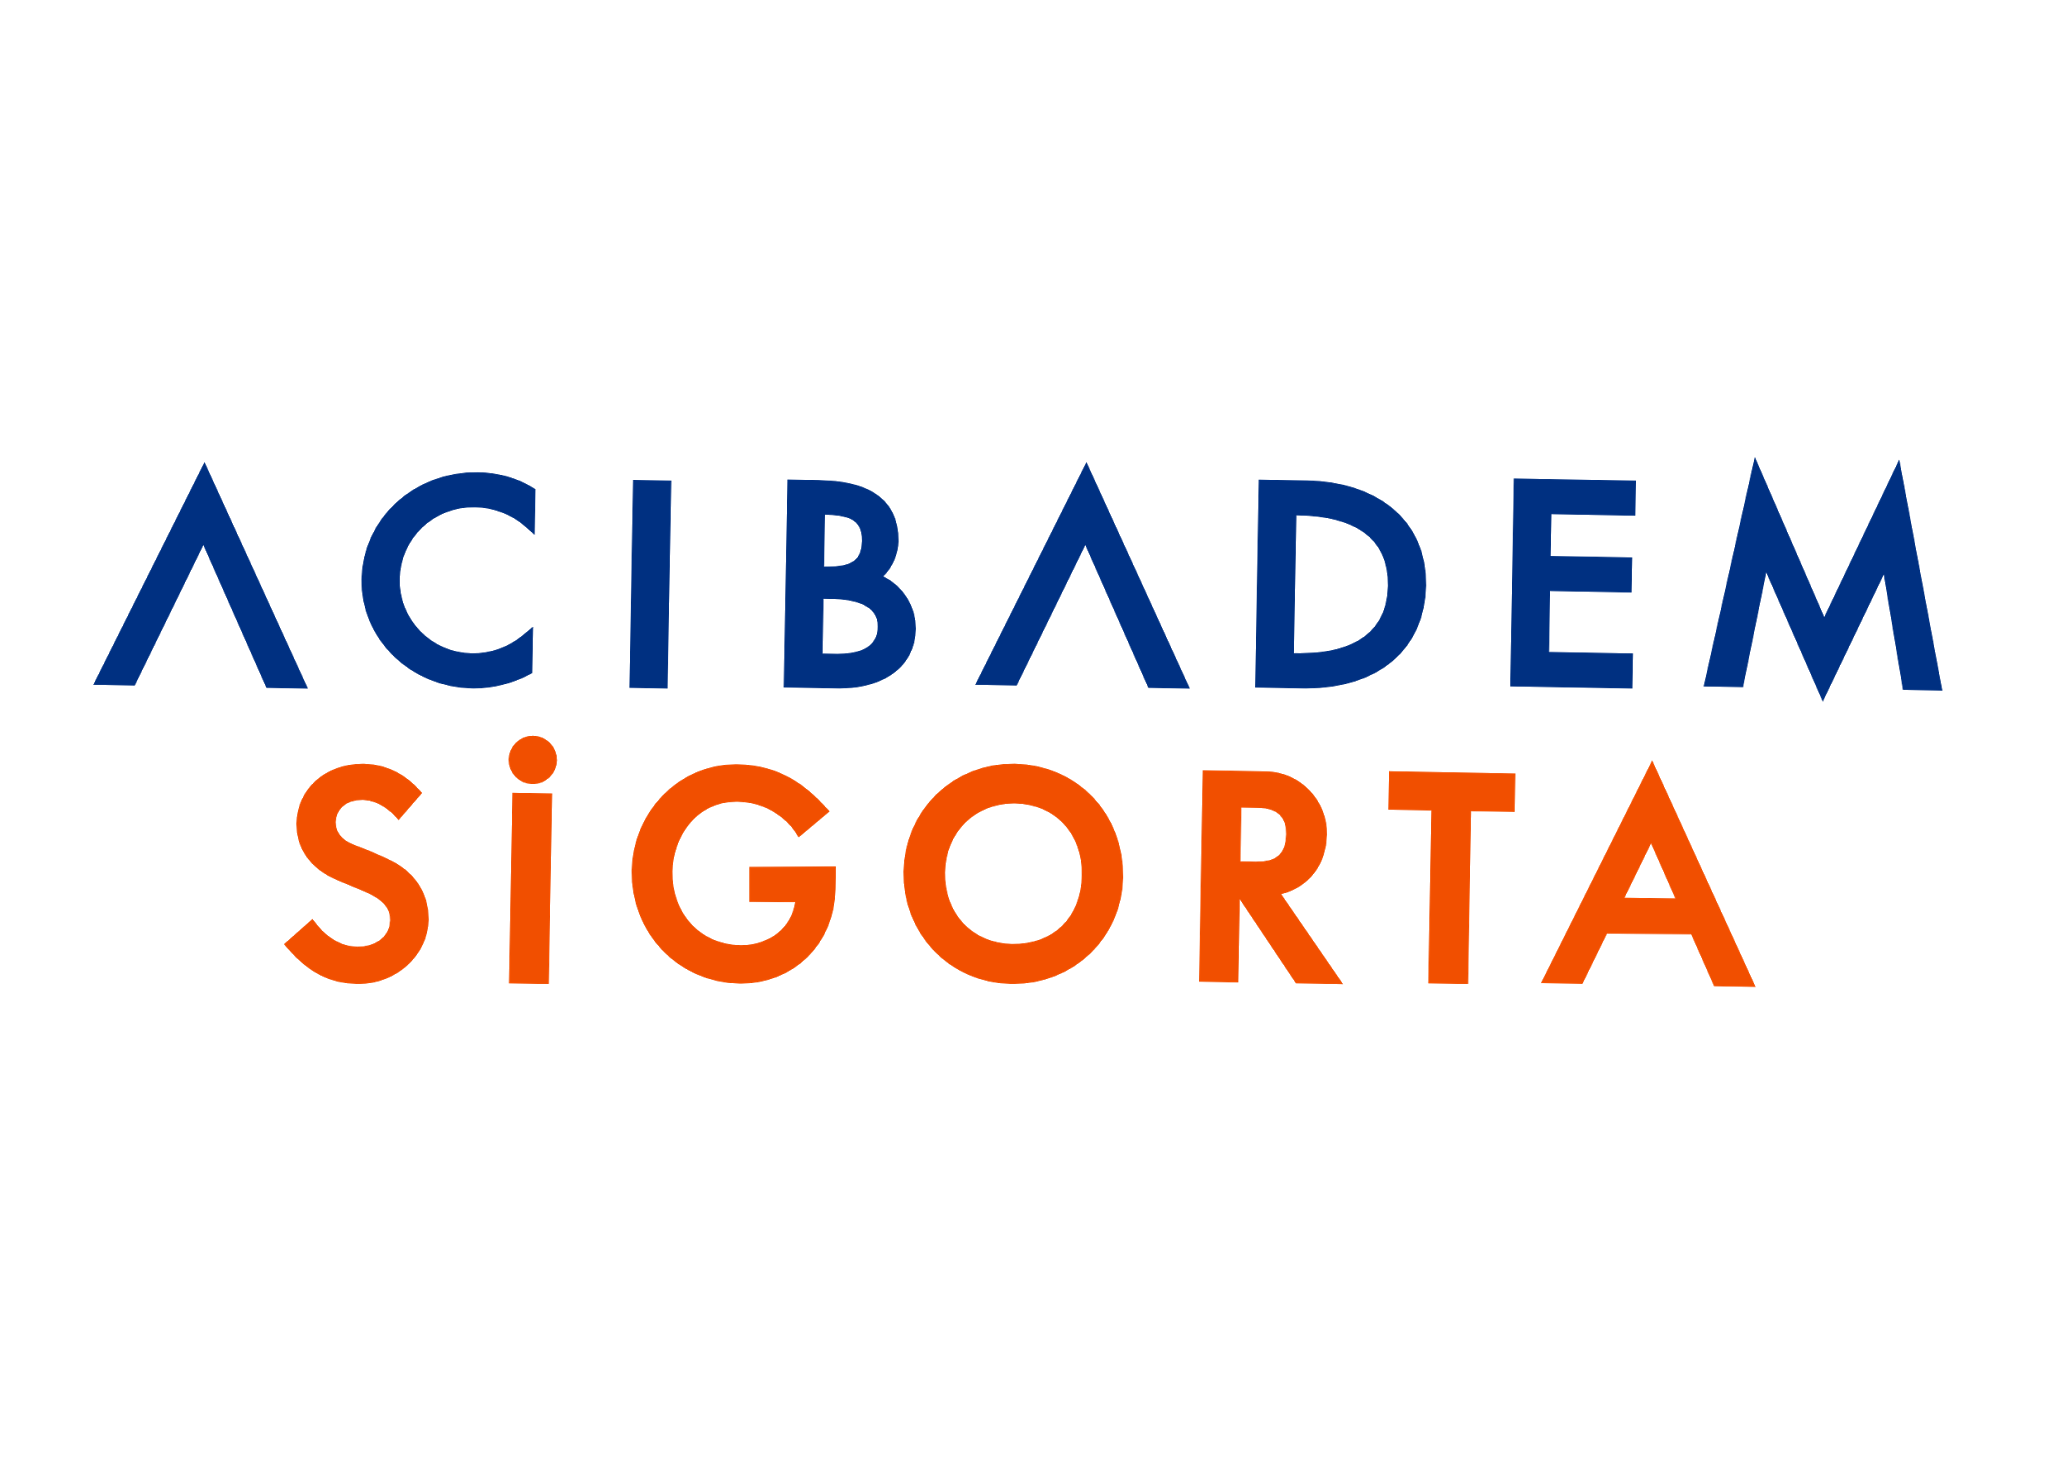 Acıbadem Sigorta   Logo Acibadem Sigorta Png - Acibadem Sigorta, Transparent background PNG HD thumbnail